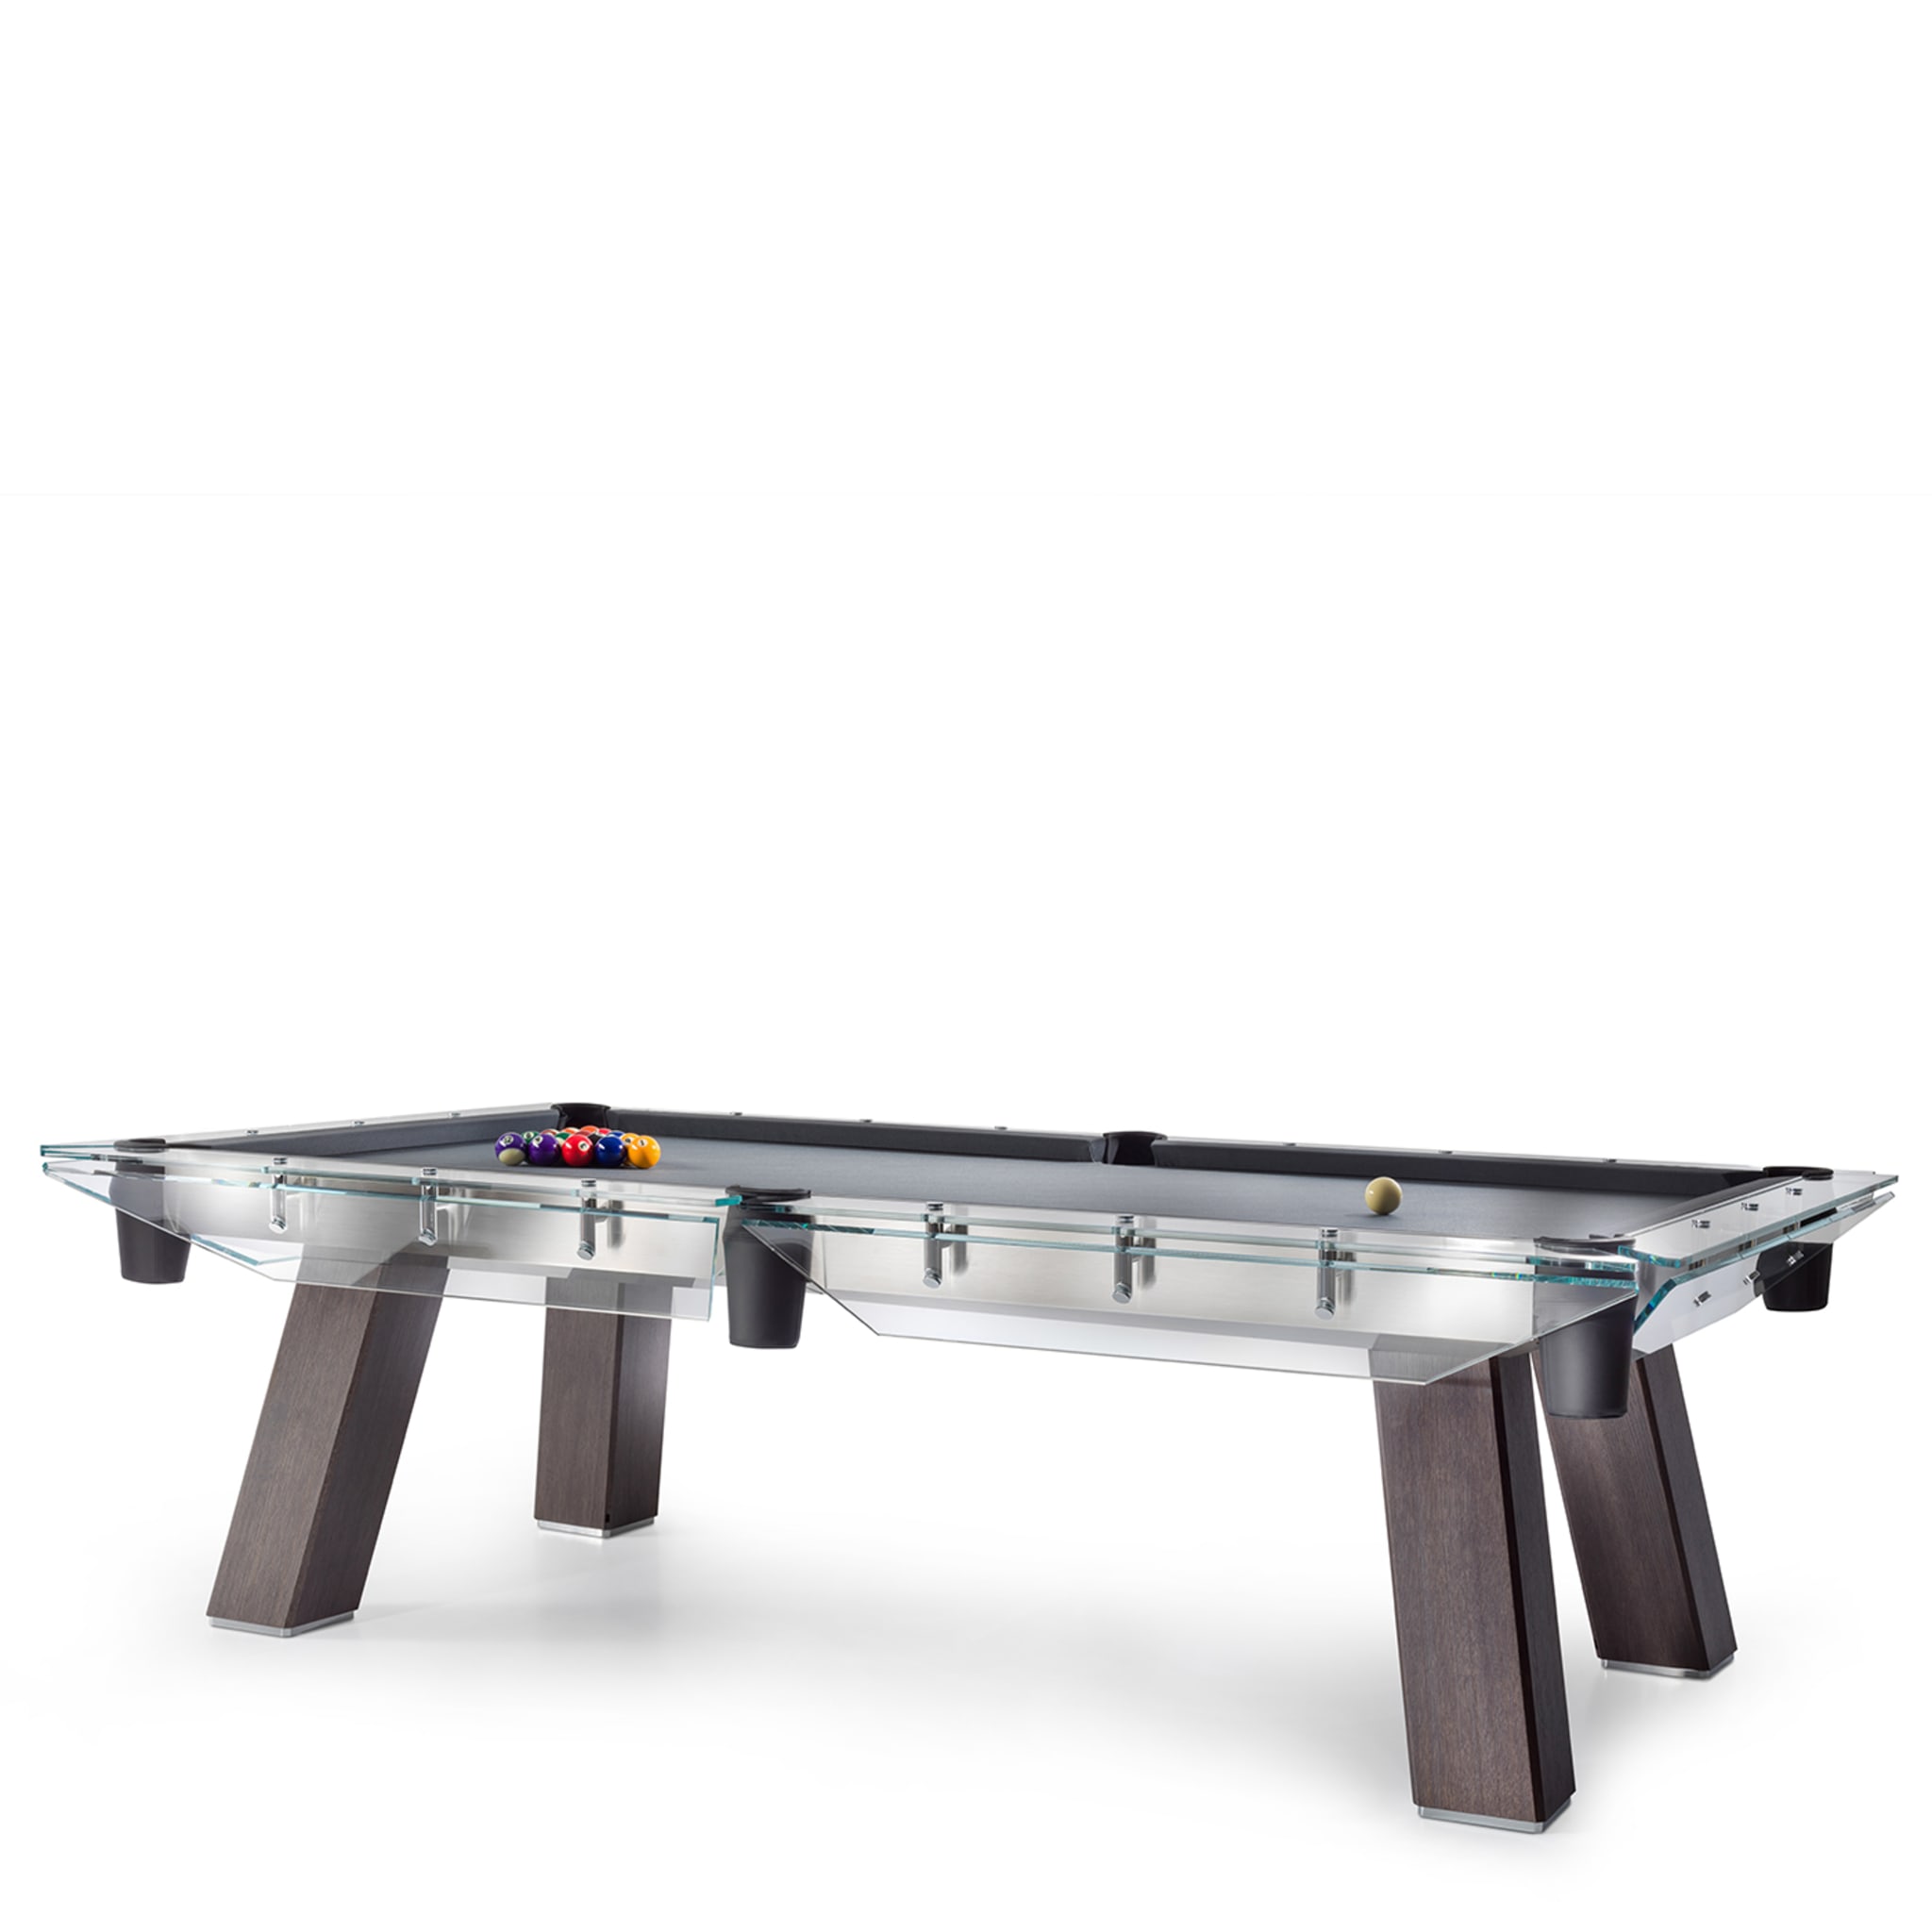 Filotto Wood-Edition Billiard Table - Alternative view 1